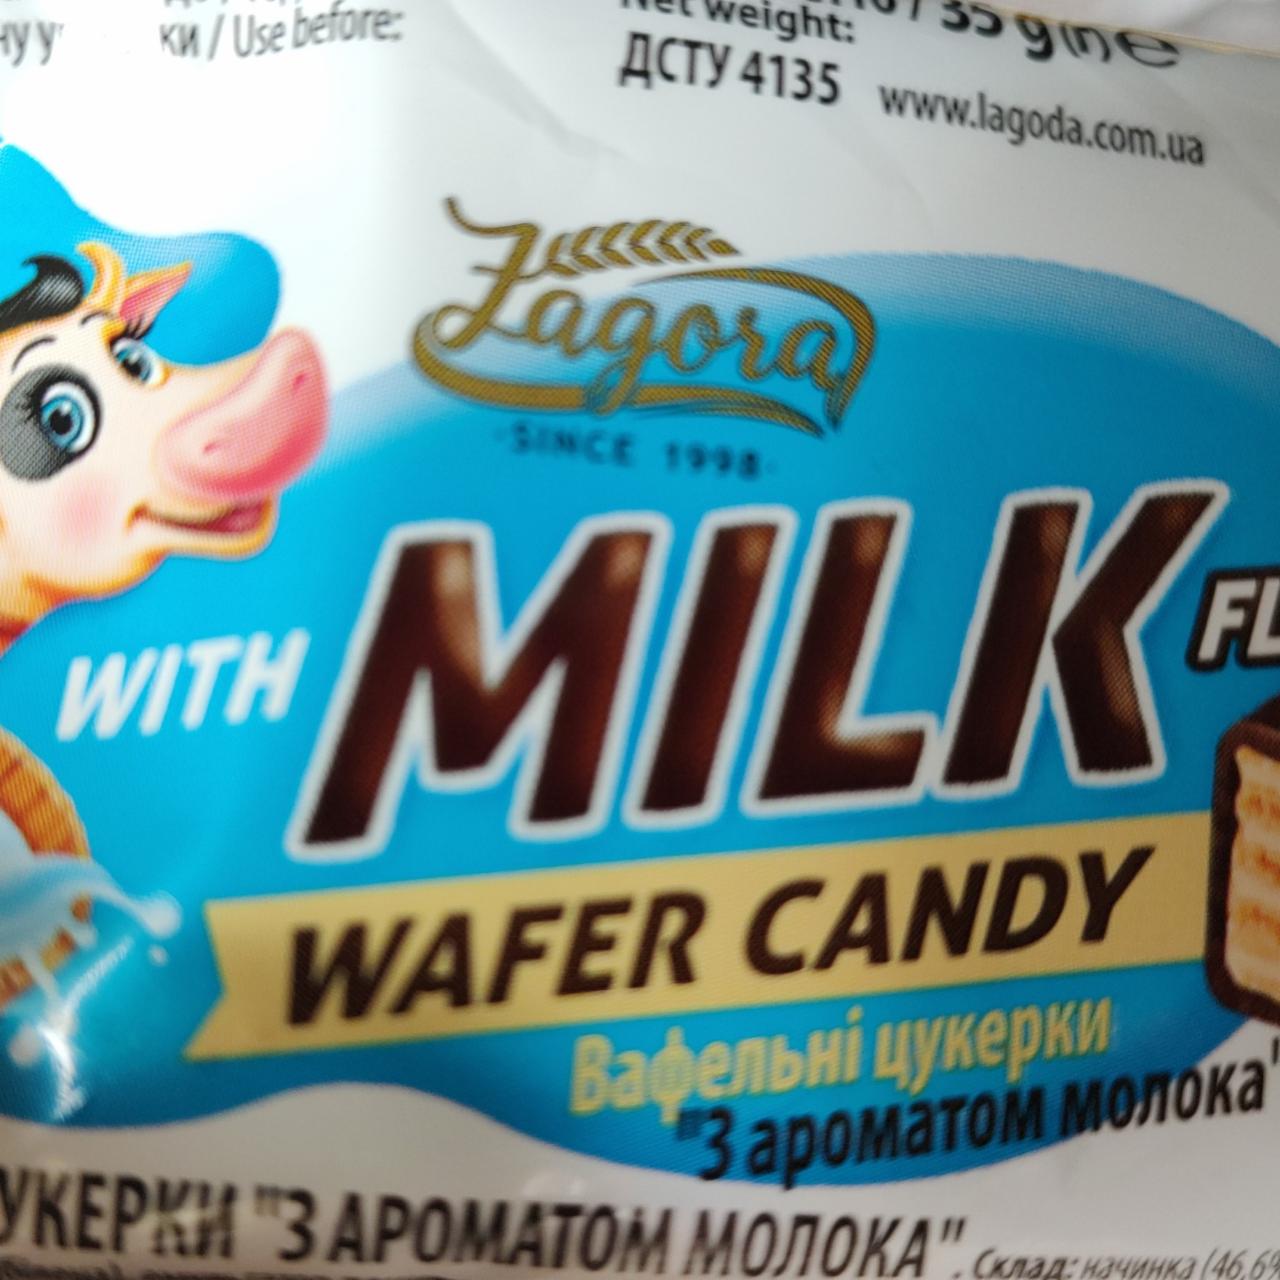 Фото - Вафельные конфеты с ароматом молока Загора